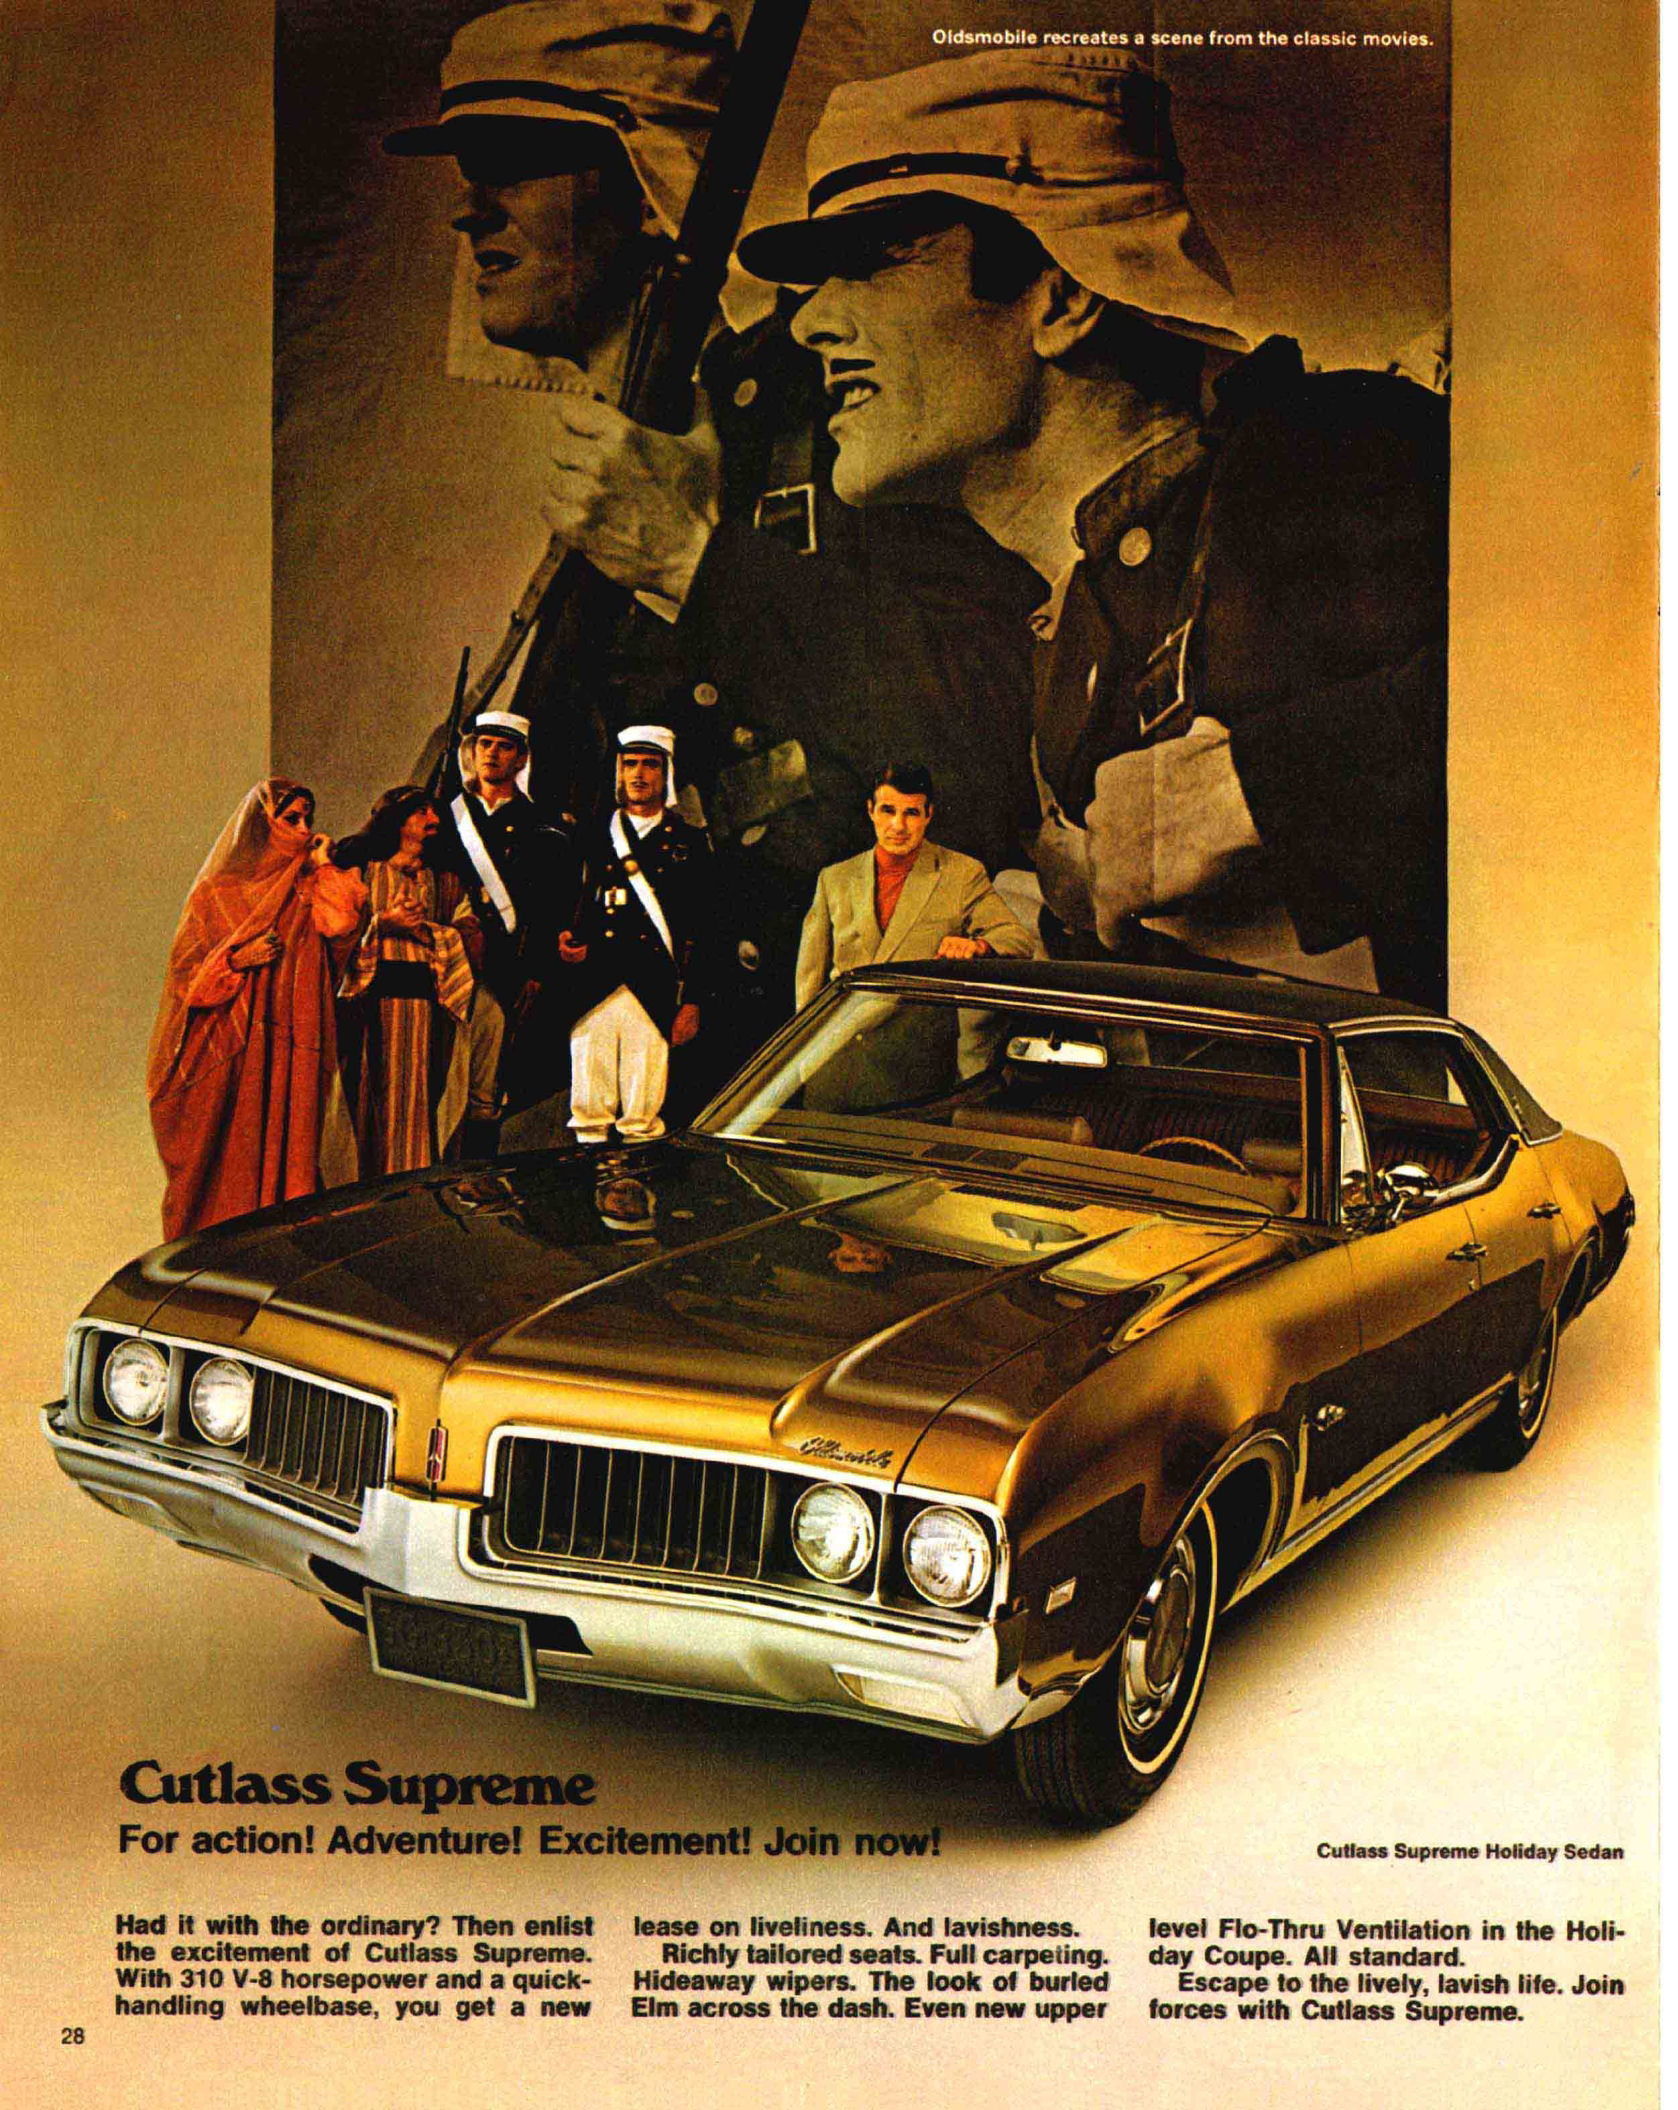 1969_Oldsmobile_Full_Line_Prestige-28